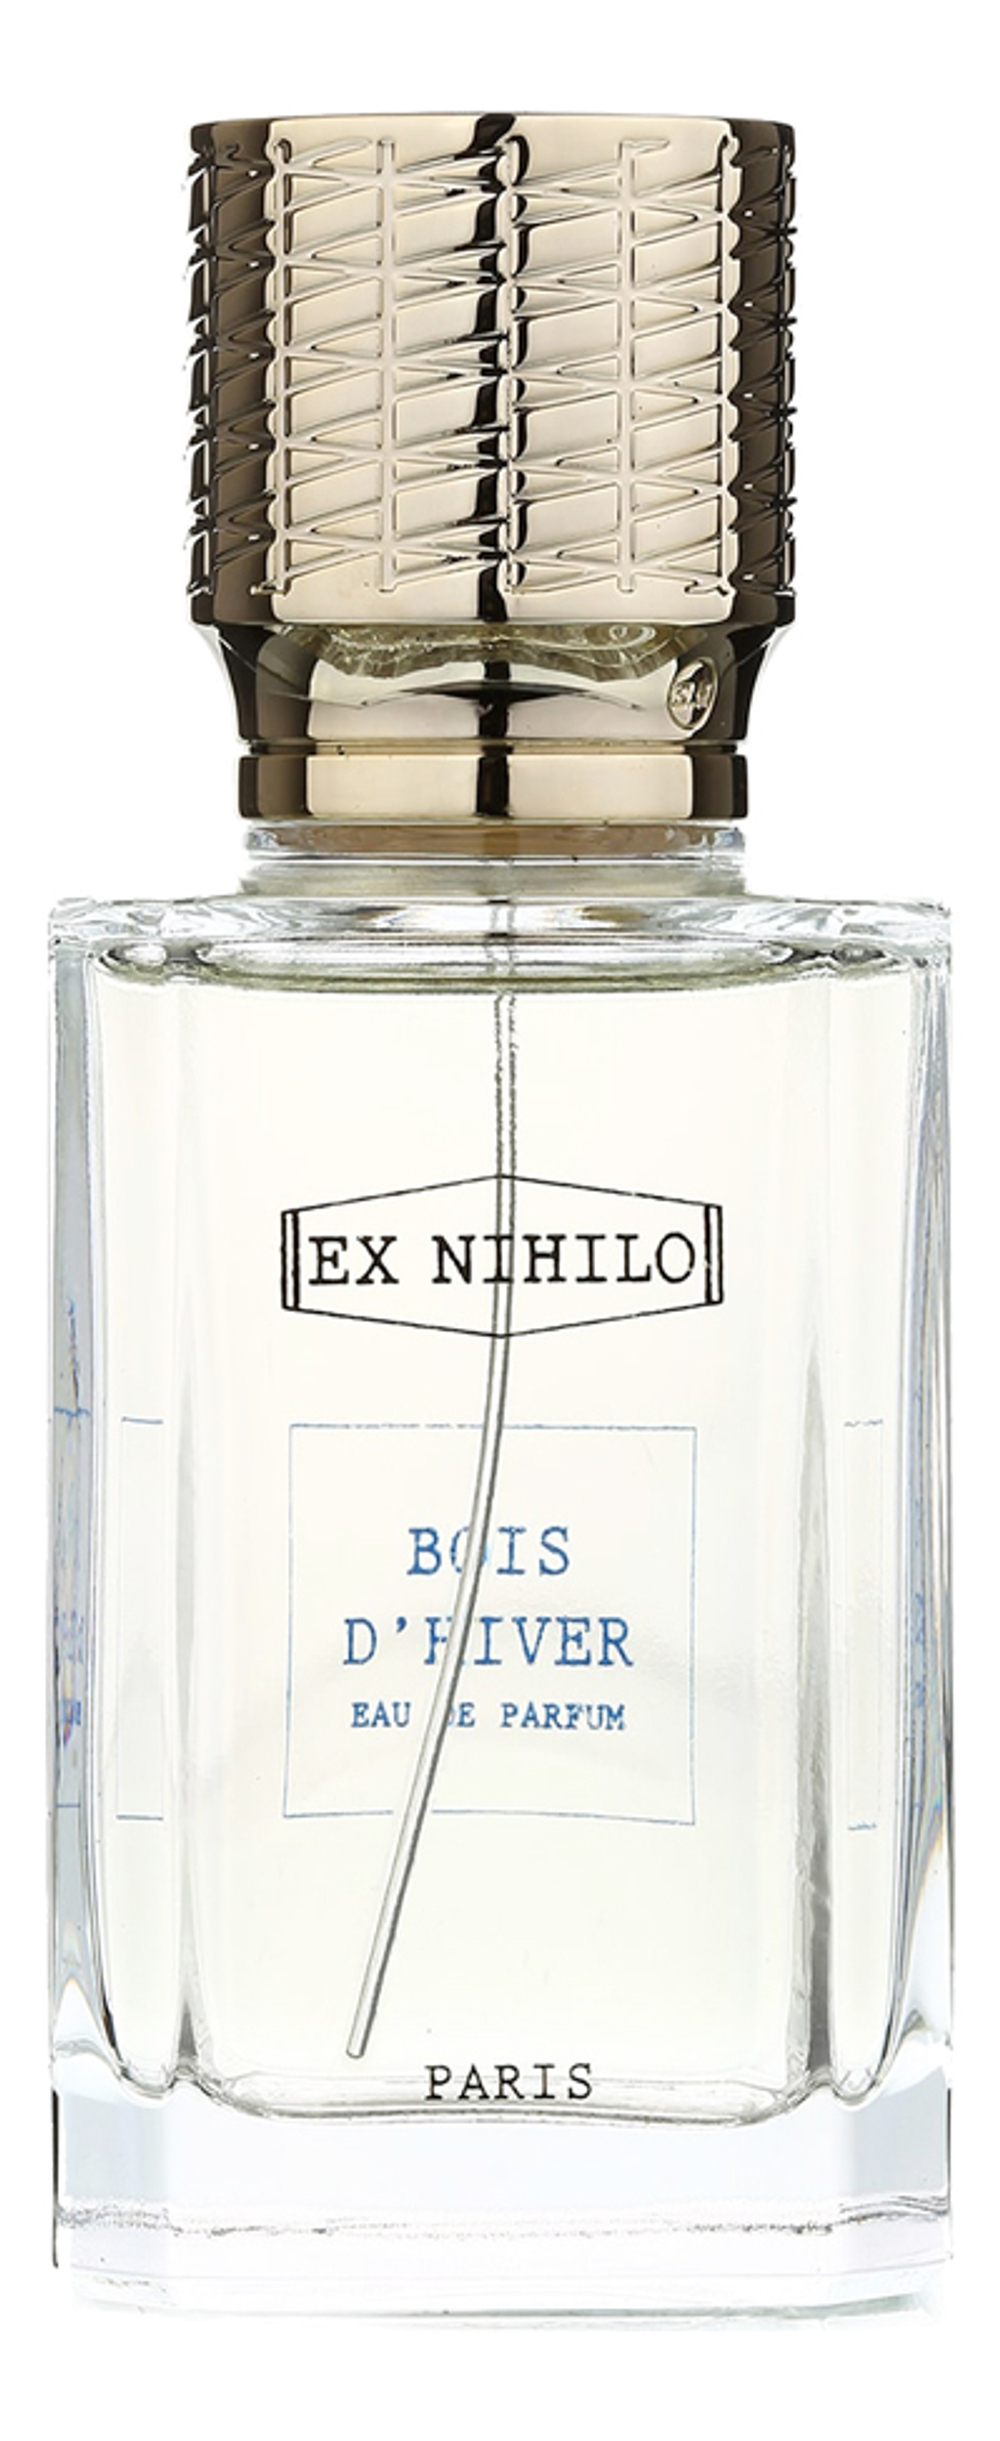 EX NIHILO Bois D'Hiver